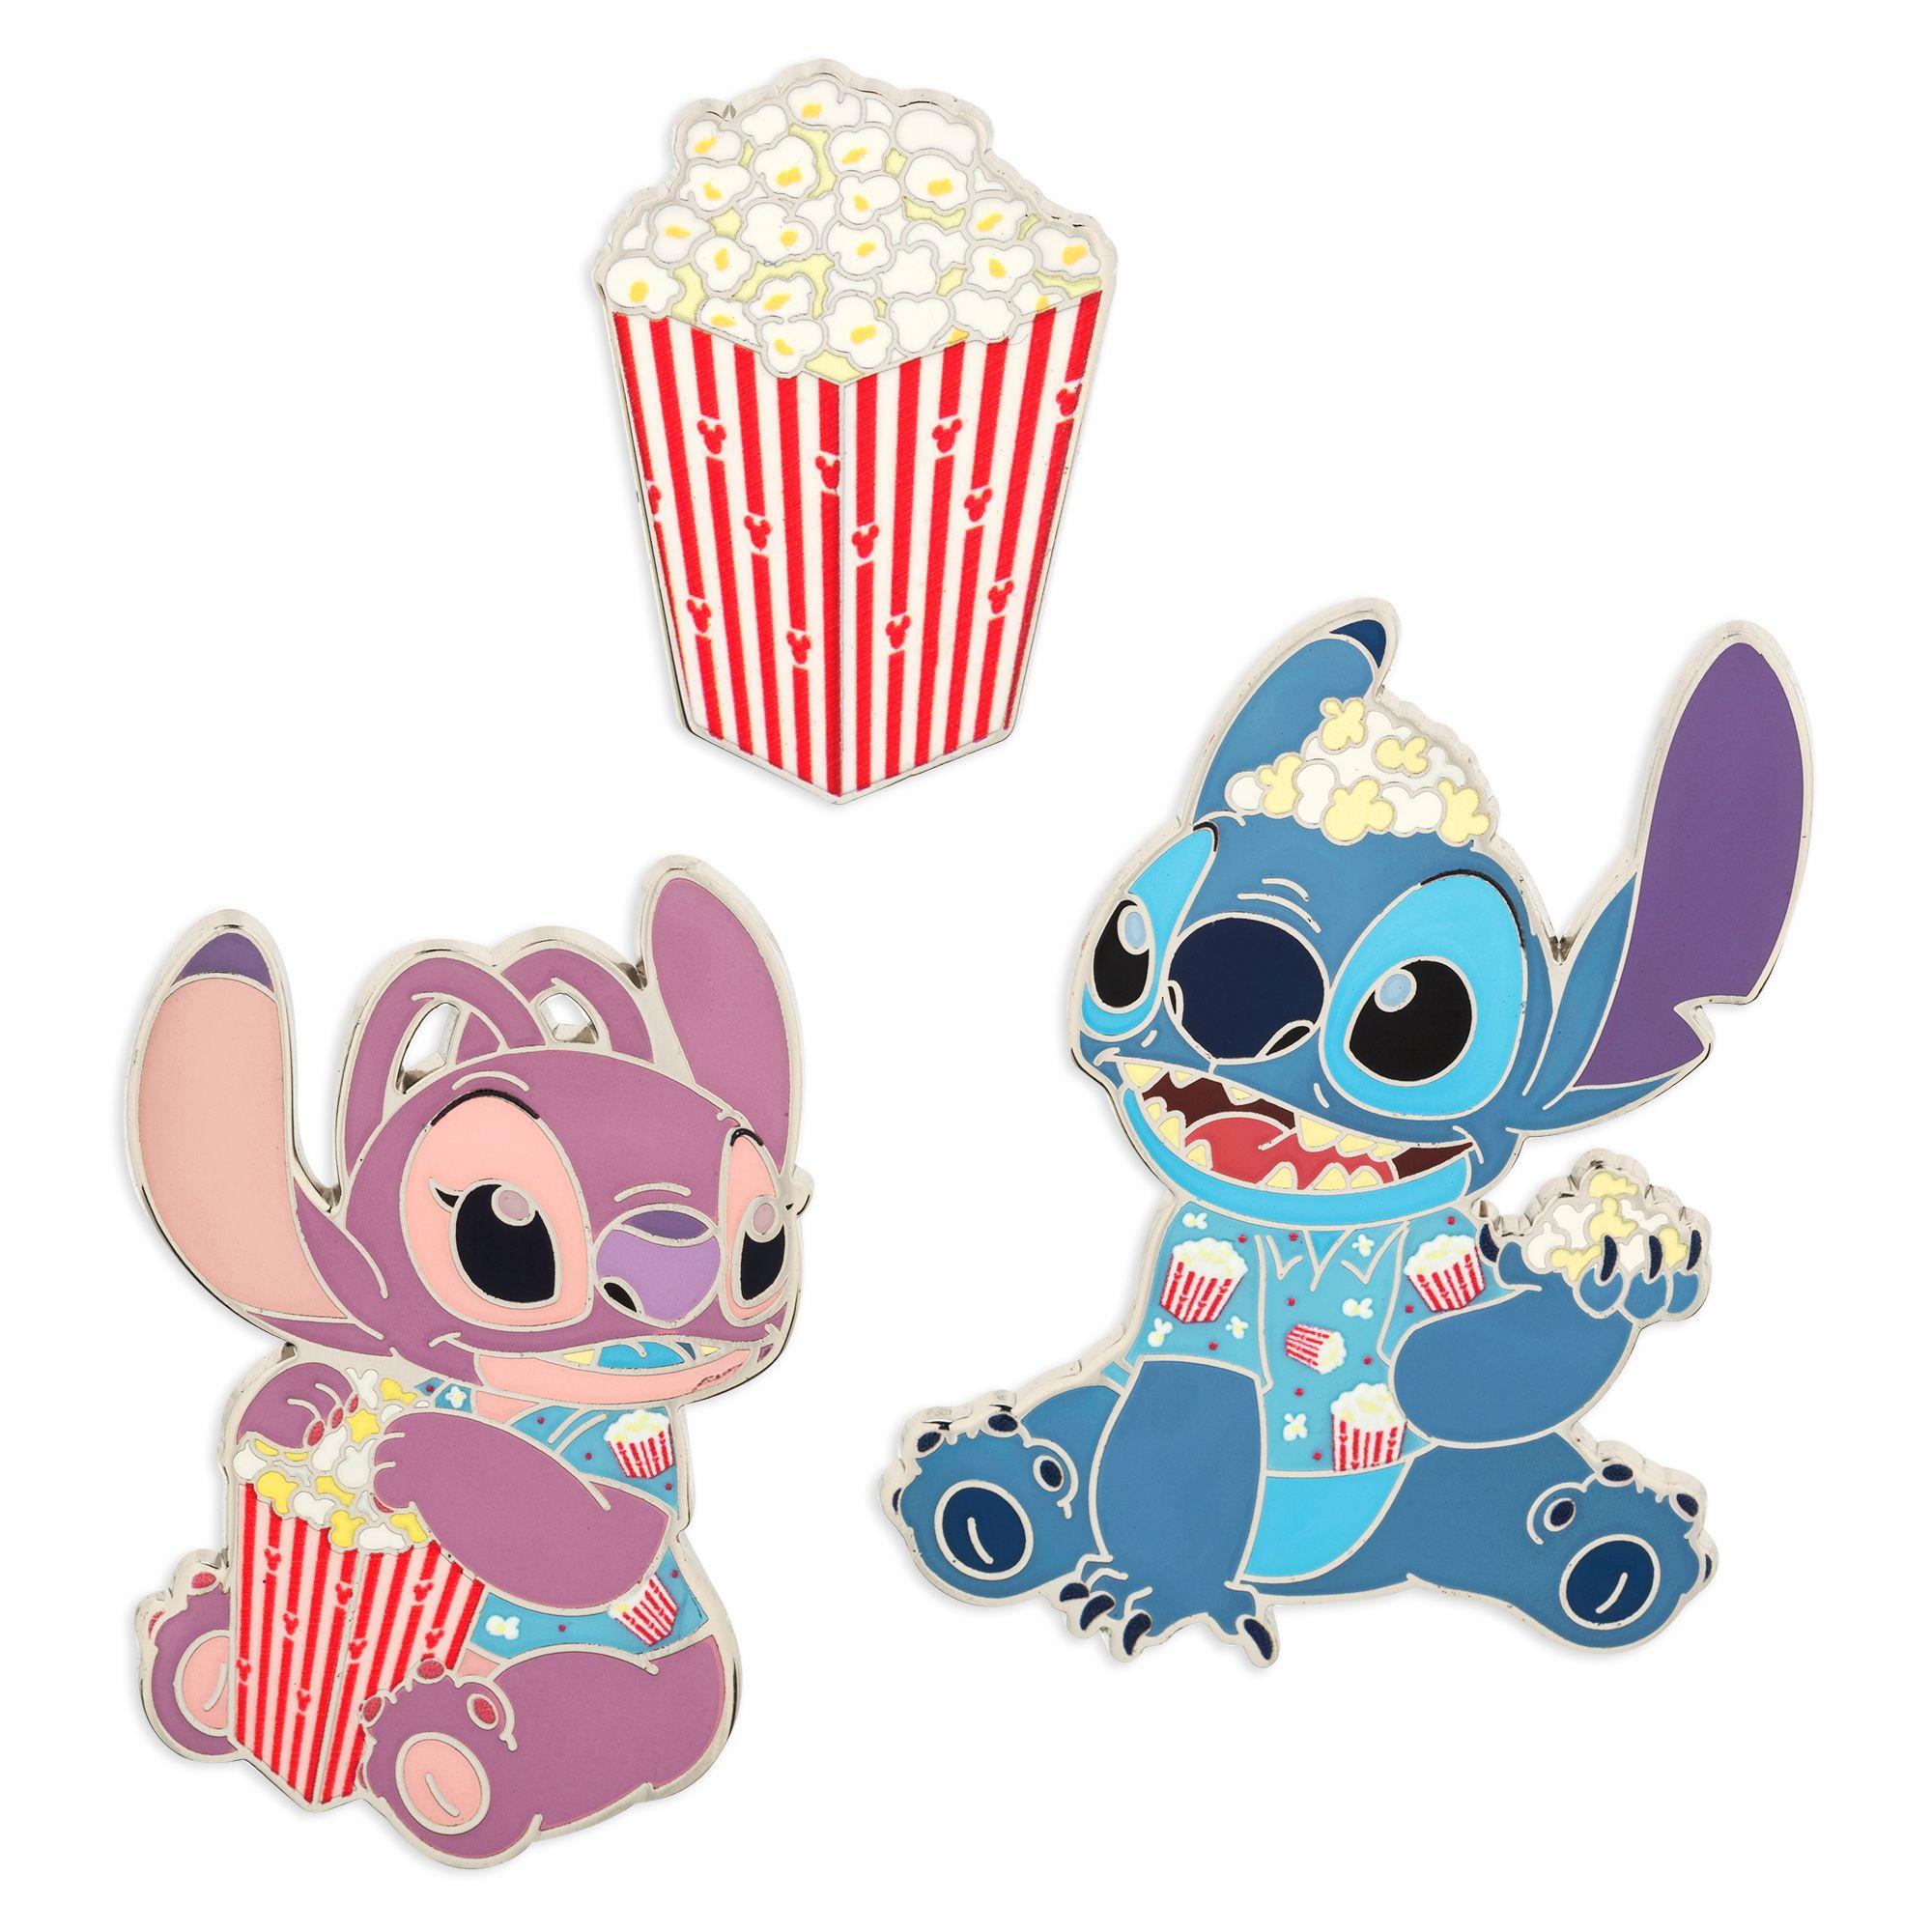 Коллекция закусок Stitch Attacks от Disney продолжается выпуском плюшевого попкорна